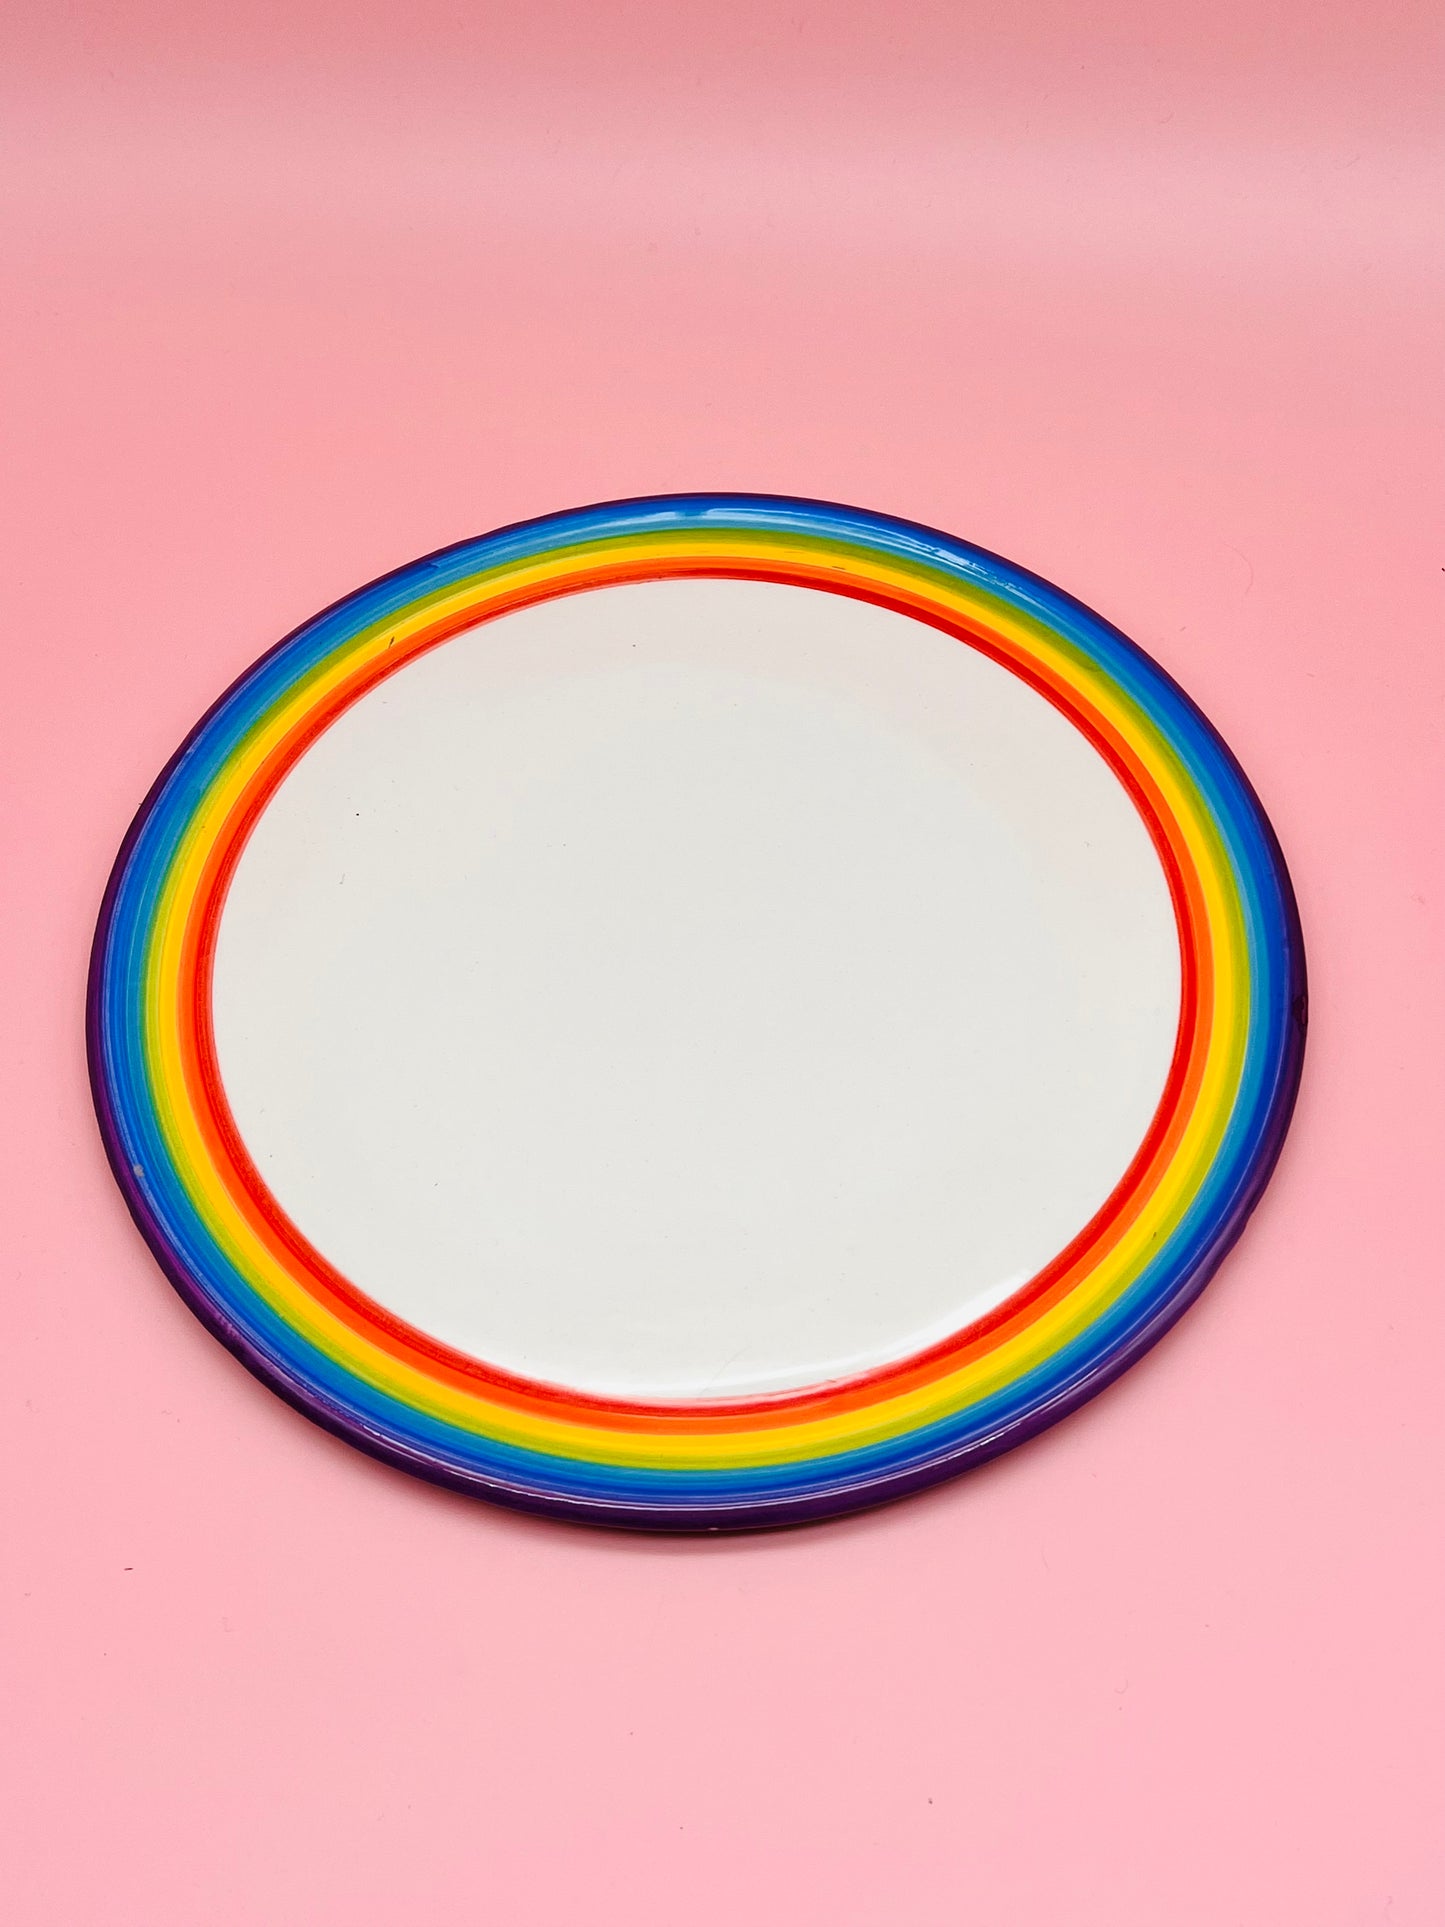 The Rainbow Plate